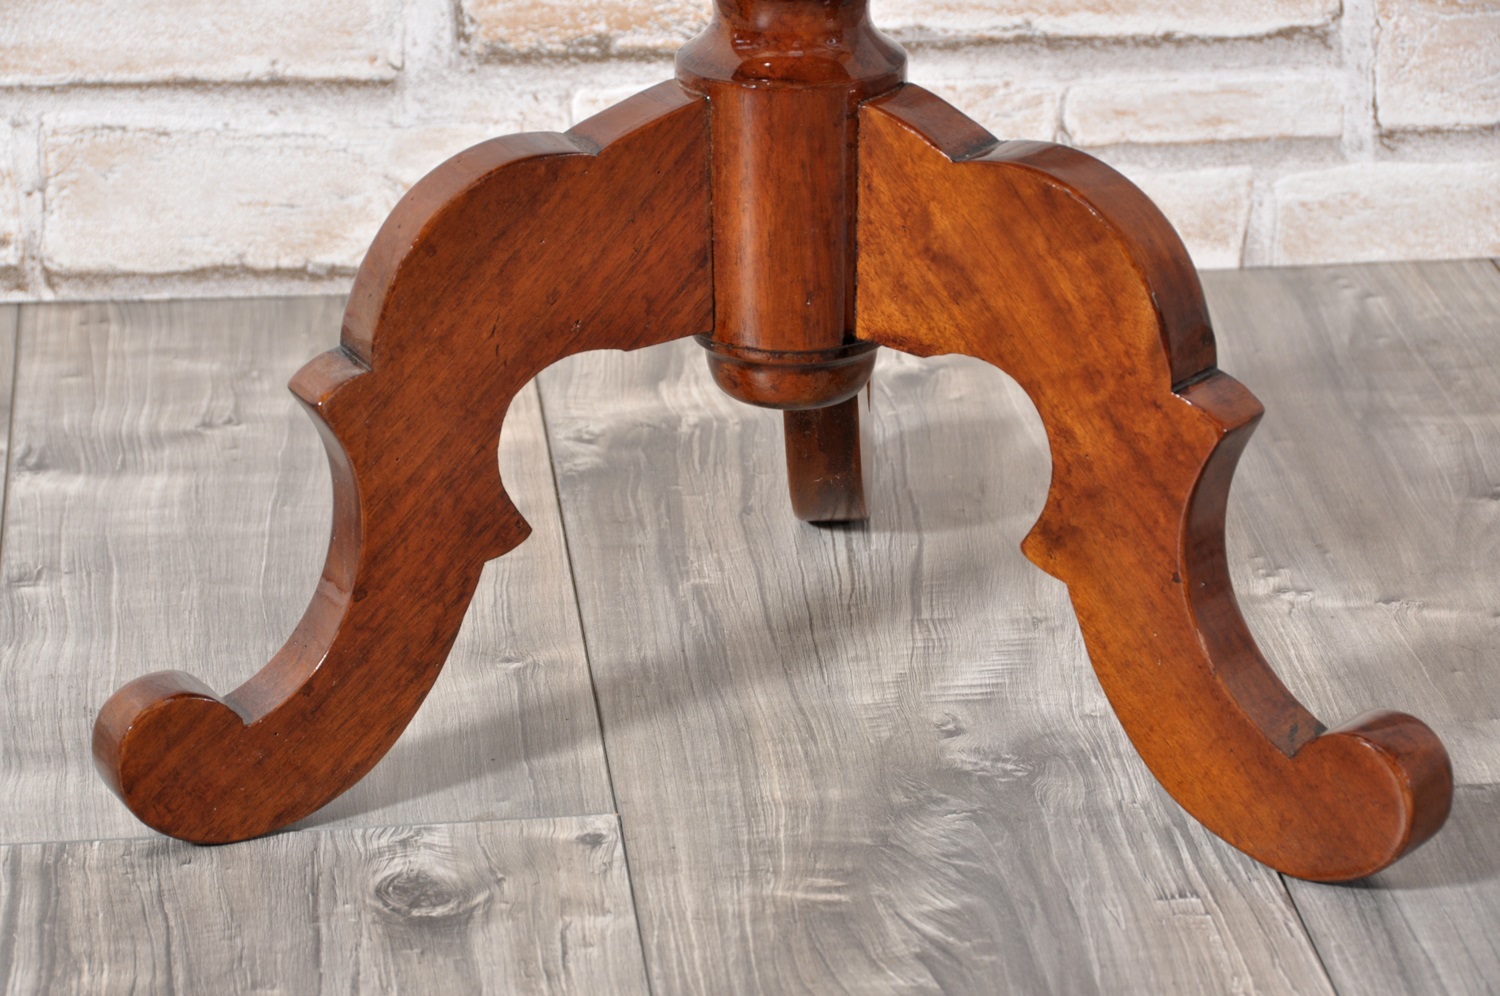 tavolino rotondo in stile Veneto piano rotondo e gambone tornito con sostegni sagomati prodotto in legno di noce massello riproducibile su misura